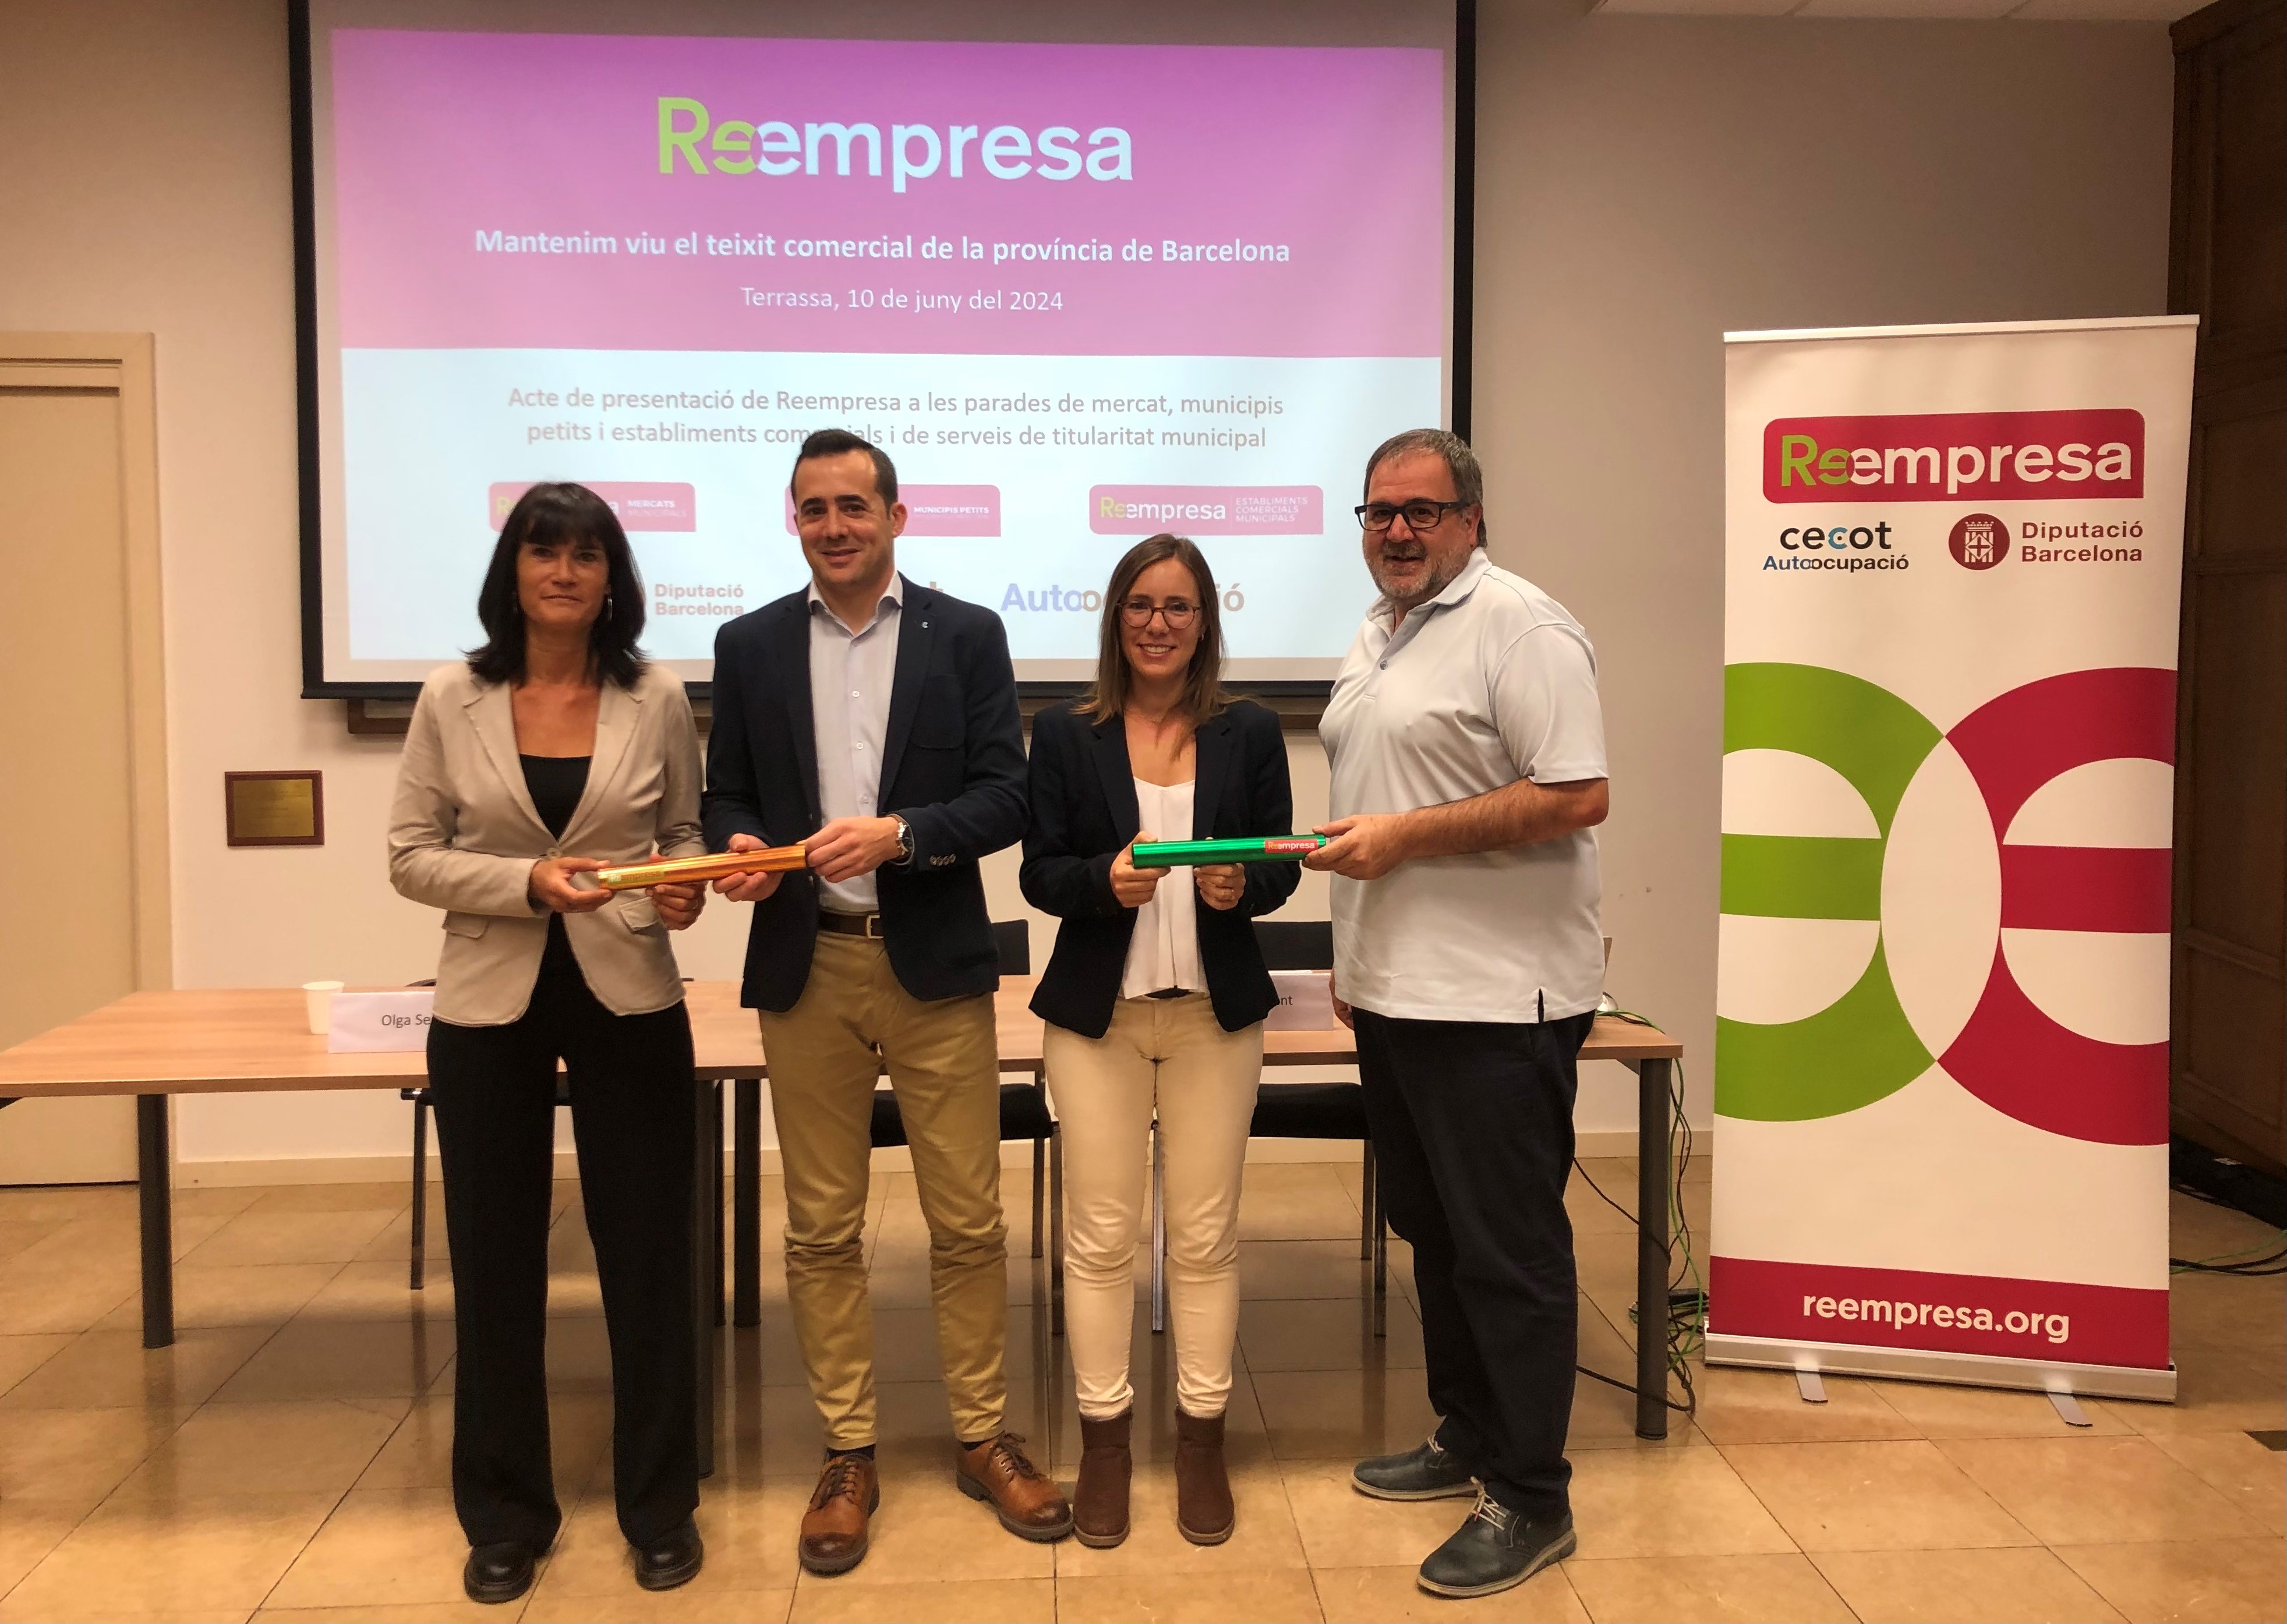 La Diputació de Barcelona i la Cecot renoven el seu compromís per fer arribar la Reempresa a les parades de mercat, municipis petits i espais comercials i de serveis de la província de Barcelona